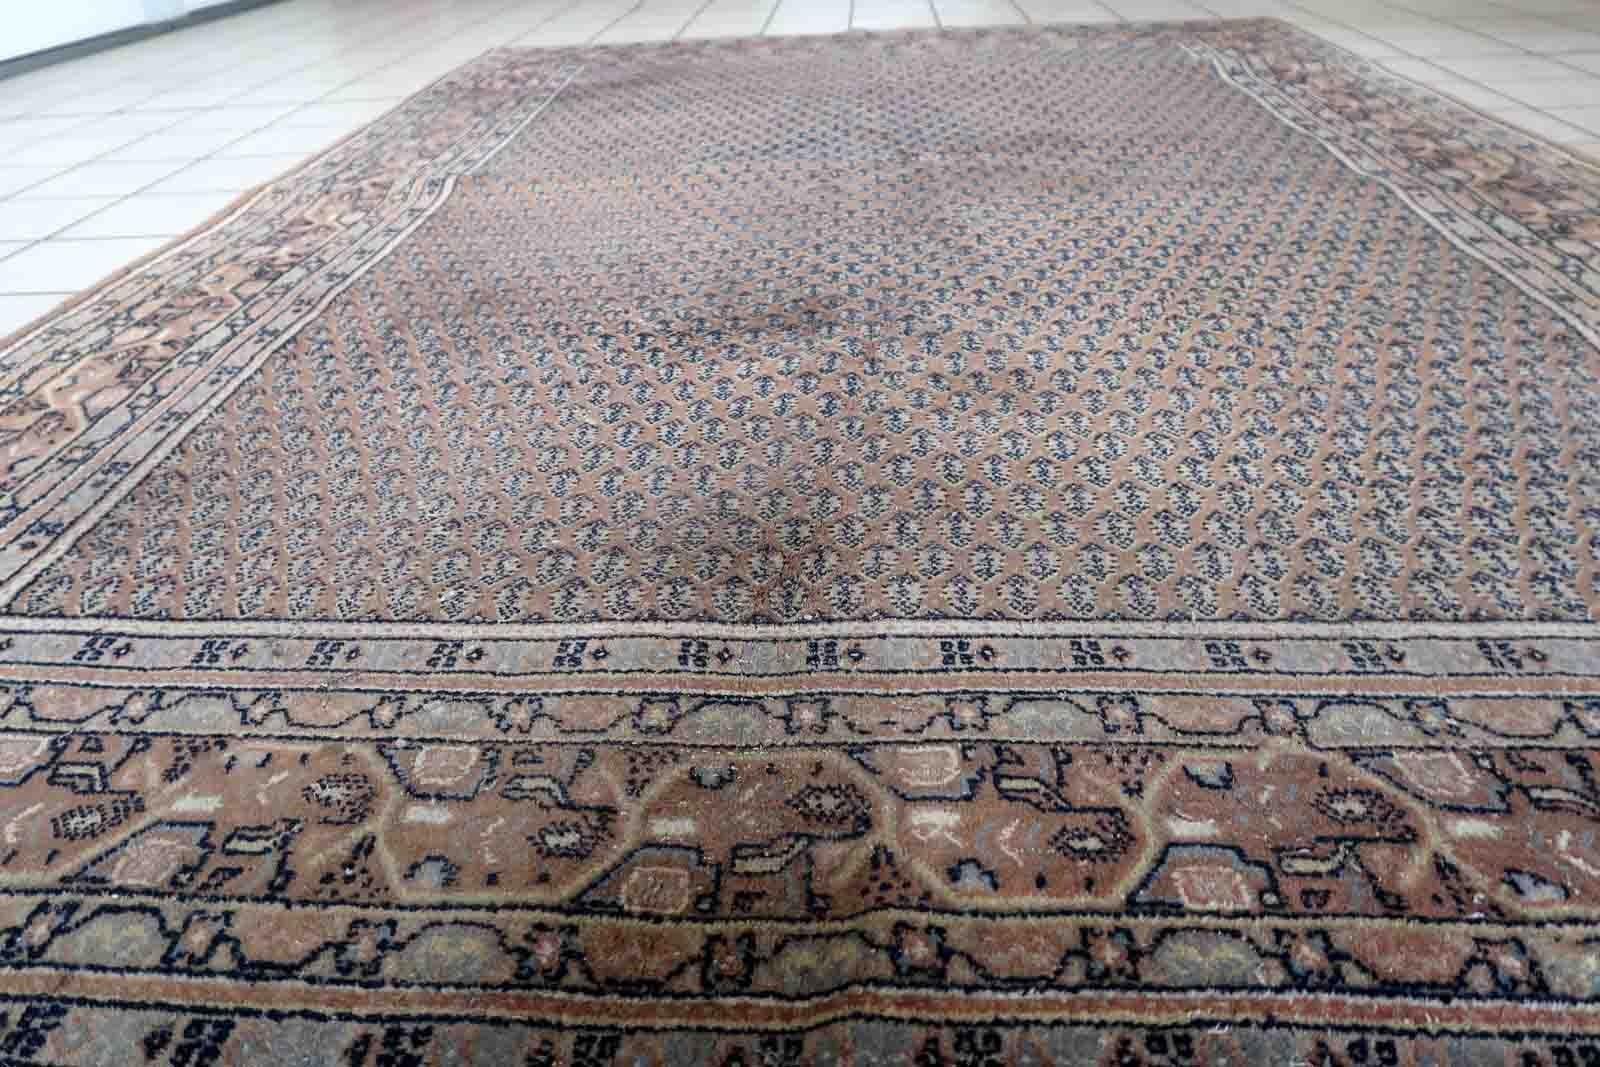 Handgefertigte Vintage-Indianer mit persischem Seraband-Design in ungewöhnlicher brauner Farbe. Der Teppich stammt aus dem Ende des 20. Jahrhunderts und ist in gutem Originalzustand mit minimalen Altersspuren.

-Zustand: original